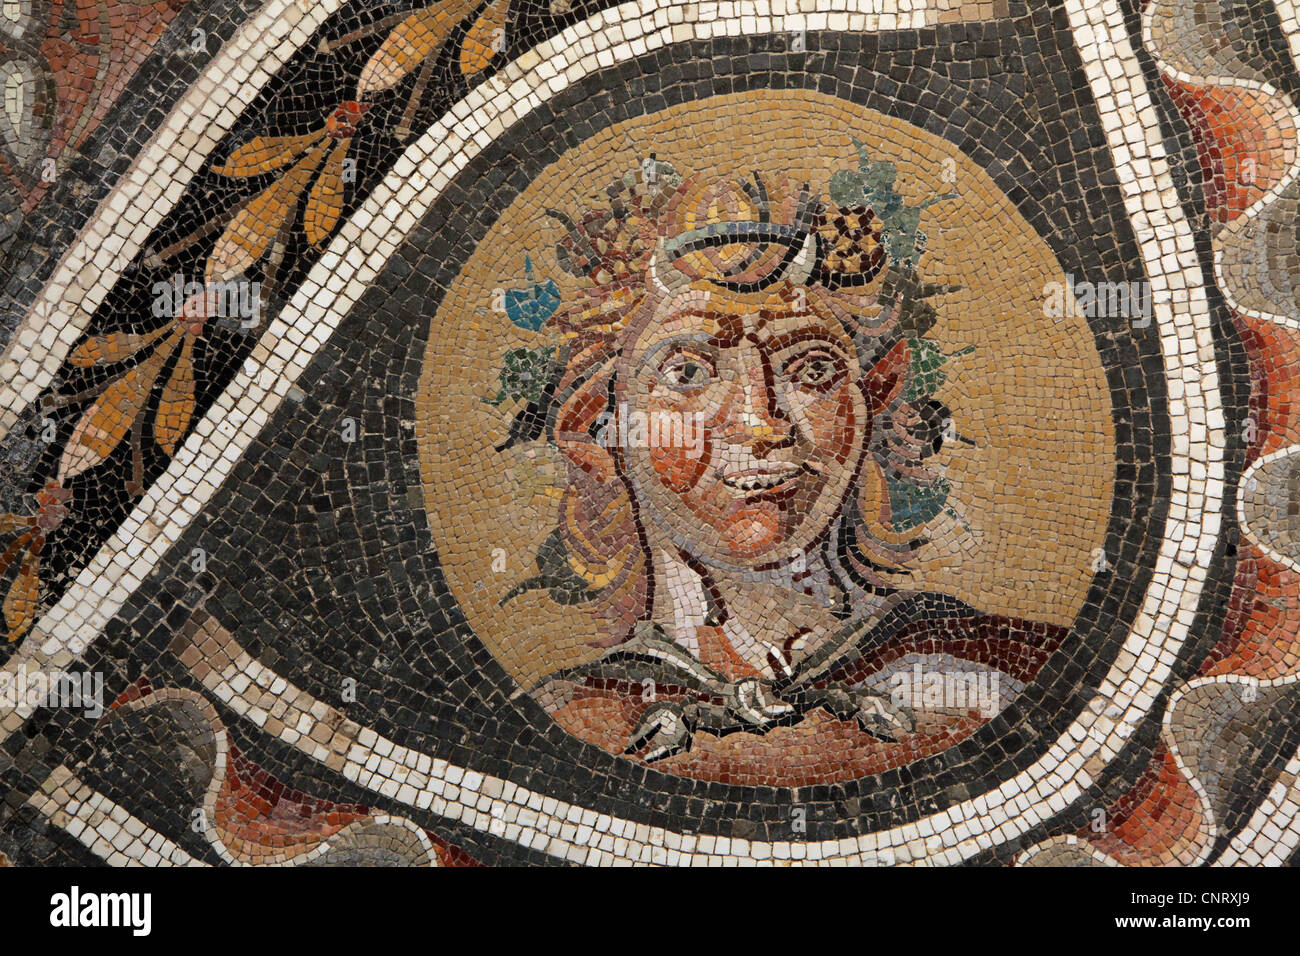 Satyr. Römische Pflaster Mosaik von 138-192 n. Chr. zu sehen im Museo Nazionale Romano in Rom, Italien. Stockfoto